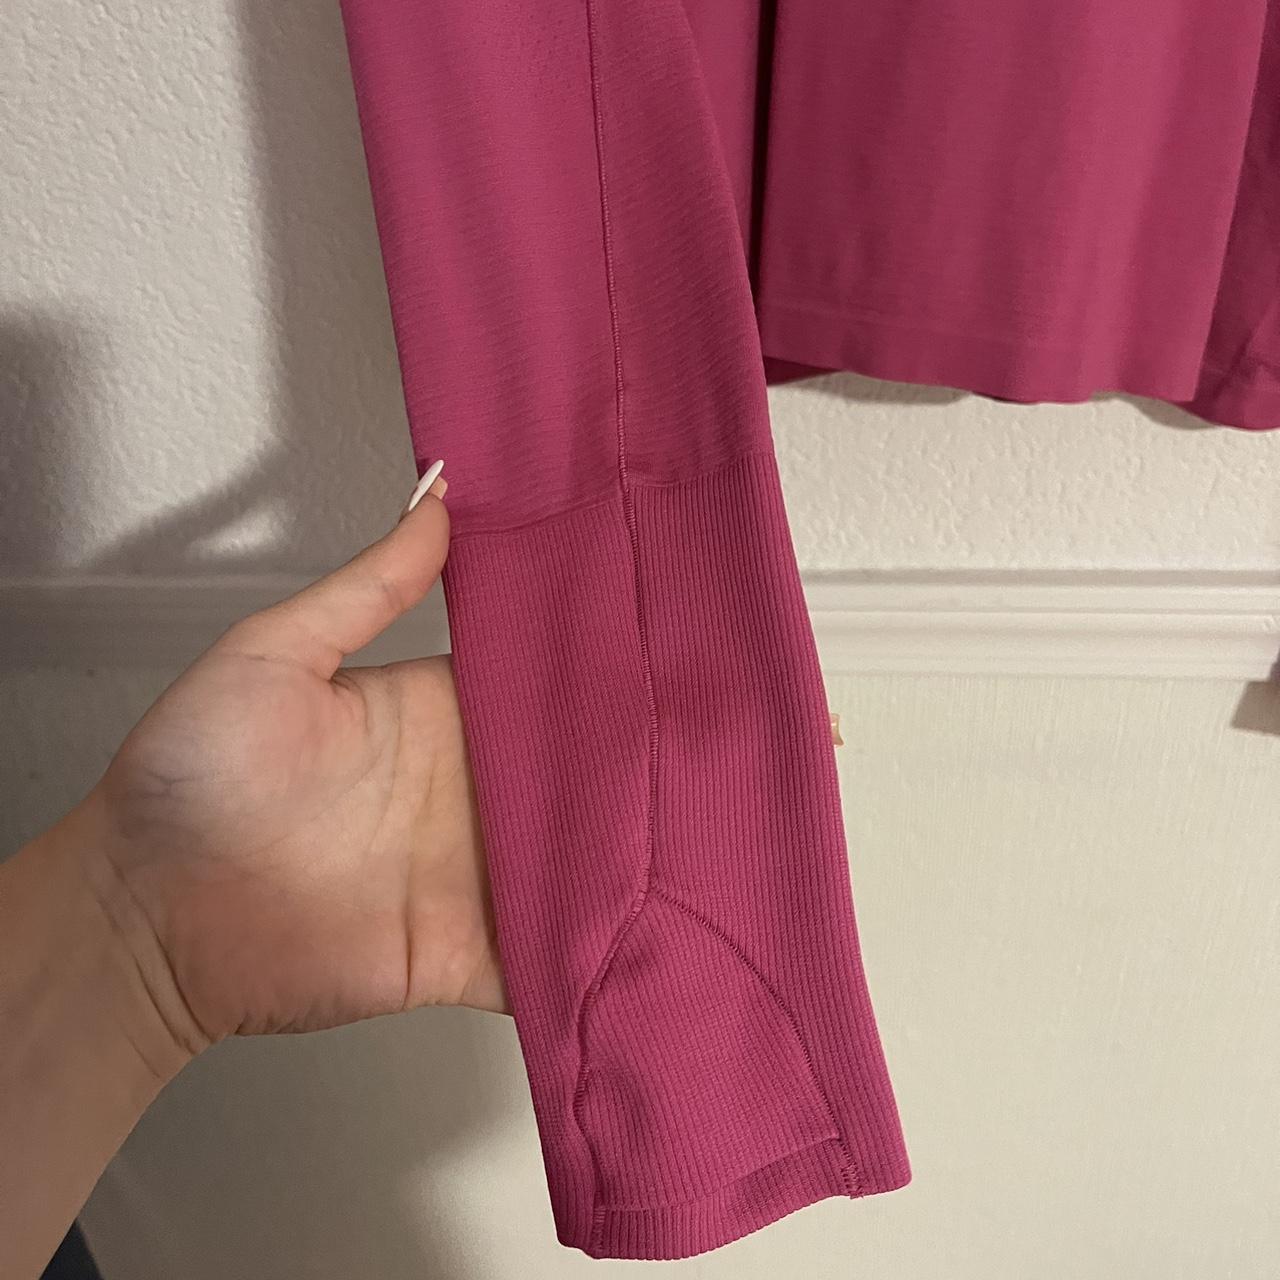 lululemon align high rise leggings in sonic pink - Depop